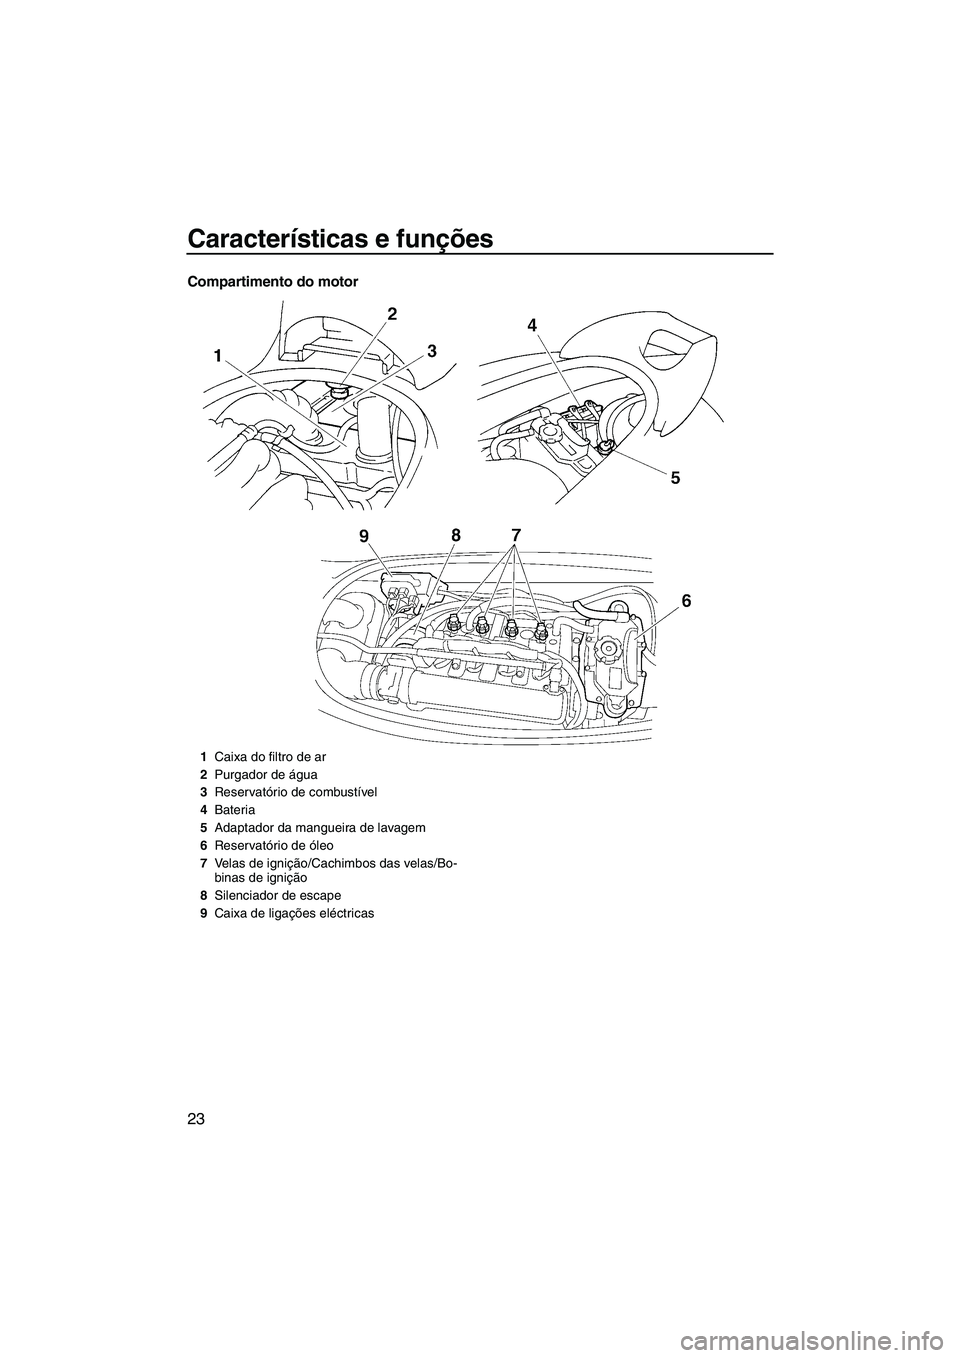 YAMAHA VX 2009  Manual de utilização (in Portuguese) Características e funções
23
Compartimento do motor
1Caixa do filtro de ar
2Purgador de água
3Reservatório de combustível
4Bateria
5Adaptador da mangueira de lavagem
6Reservatório de óleo
7Vel